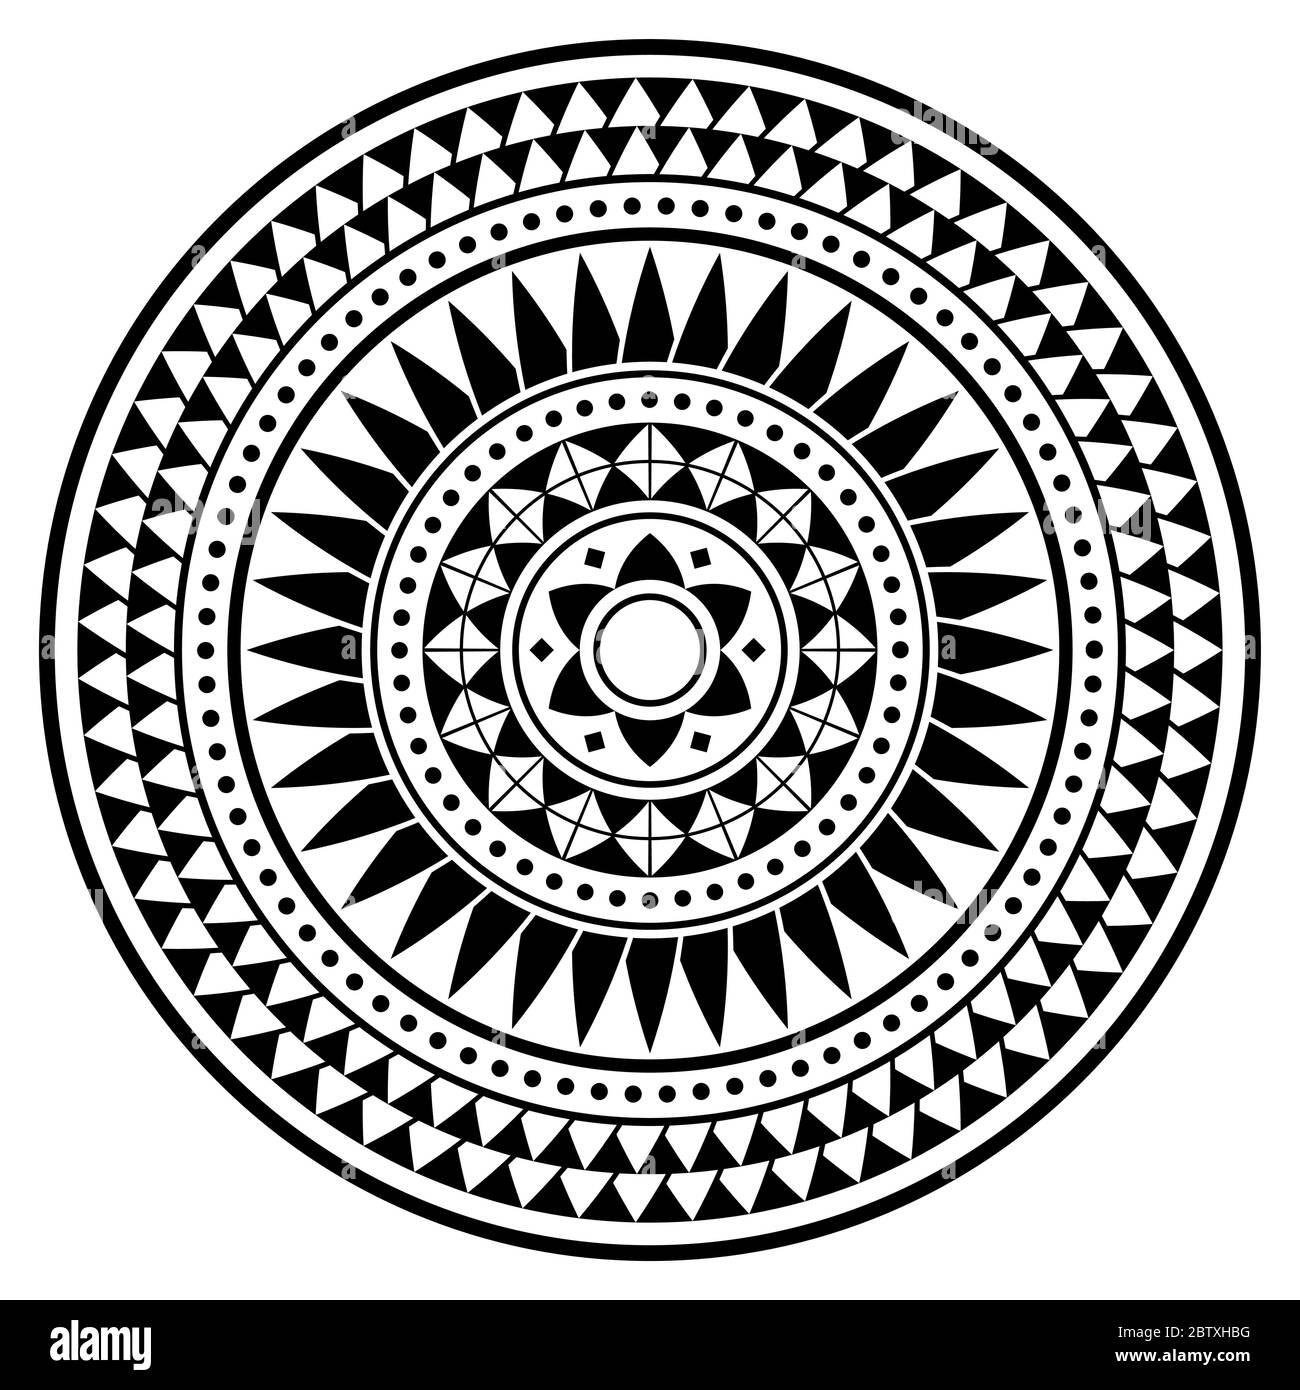 Motif tribal polynésien de style mandala, motif géométrique de style tattoo hawaïen noir et blanc Illustration de Vecteur